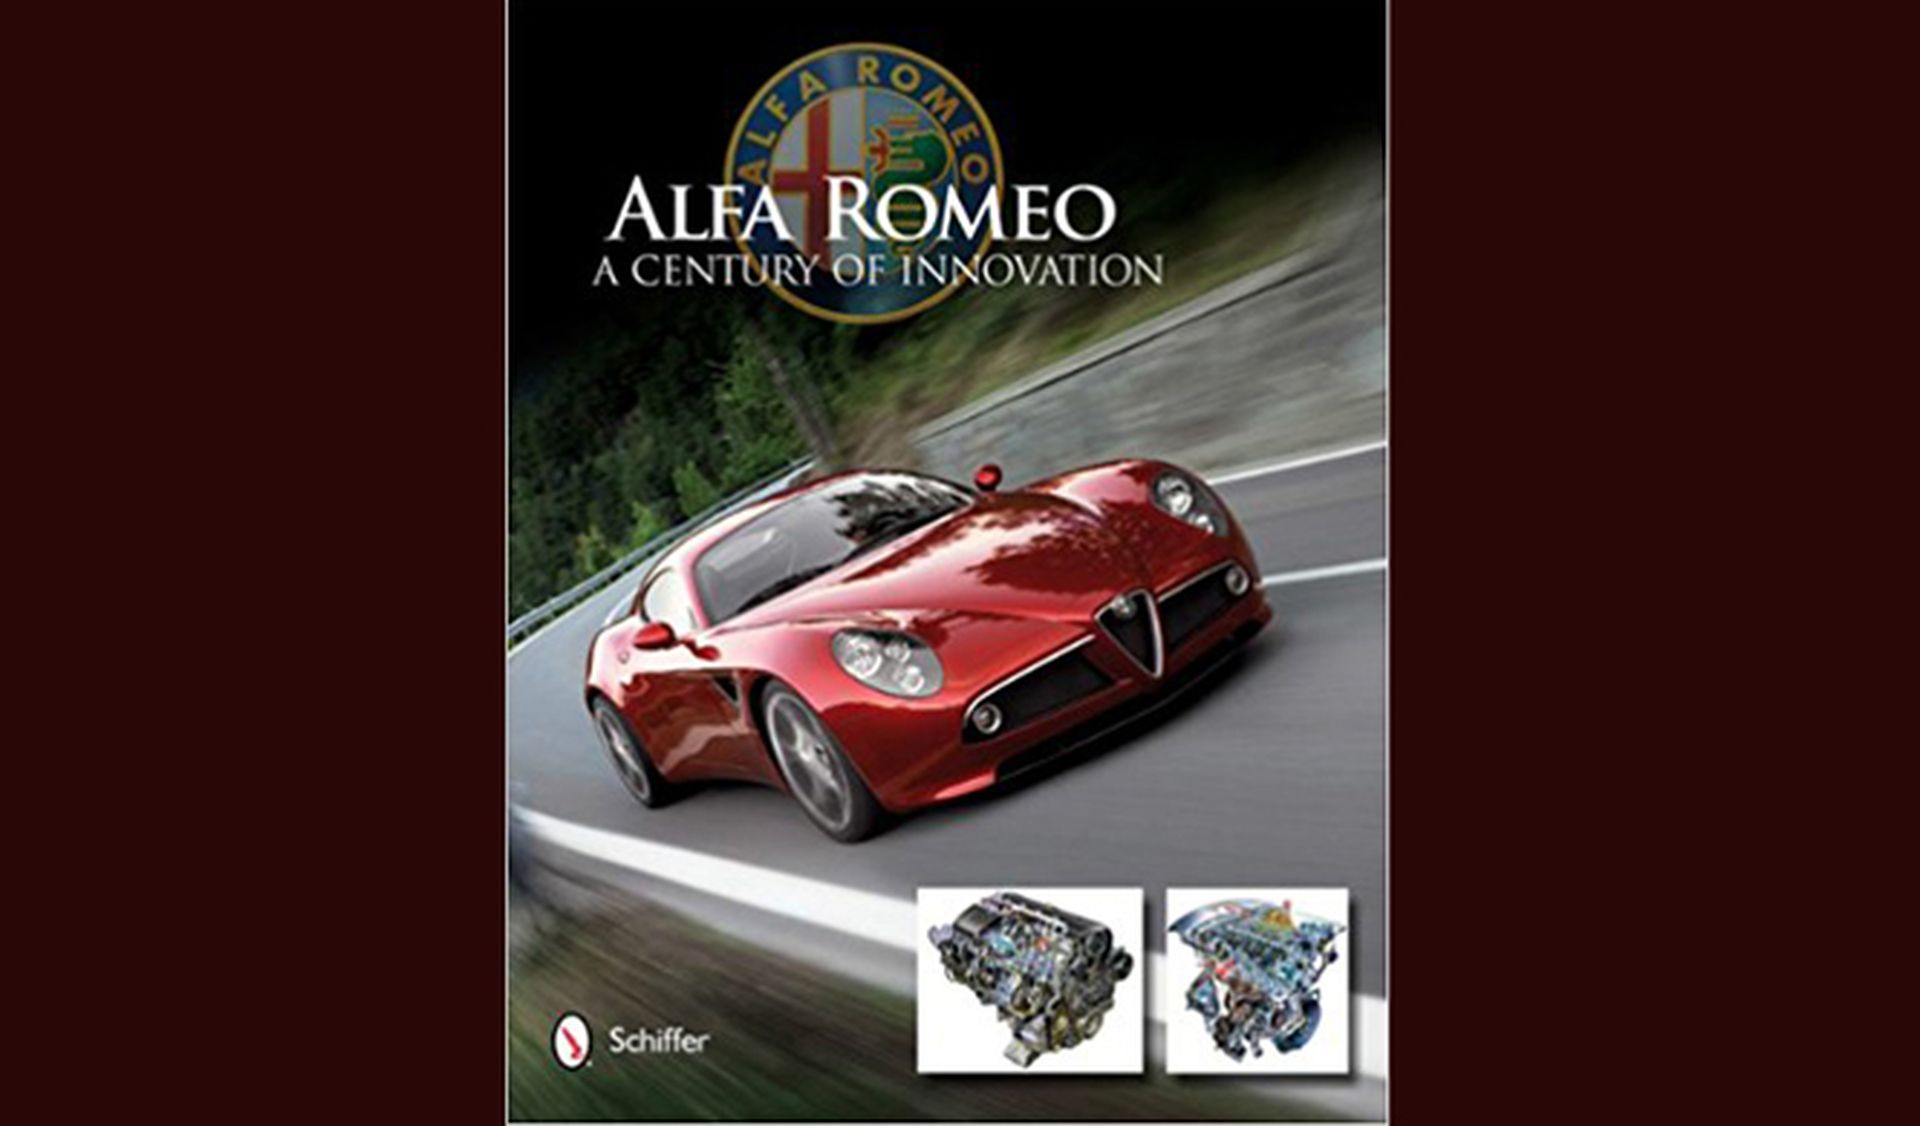 Cinco regalos de Alfa Romeo: las fotos